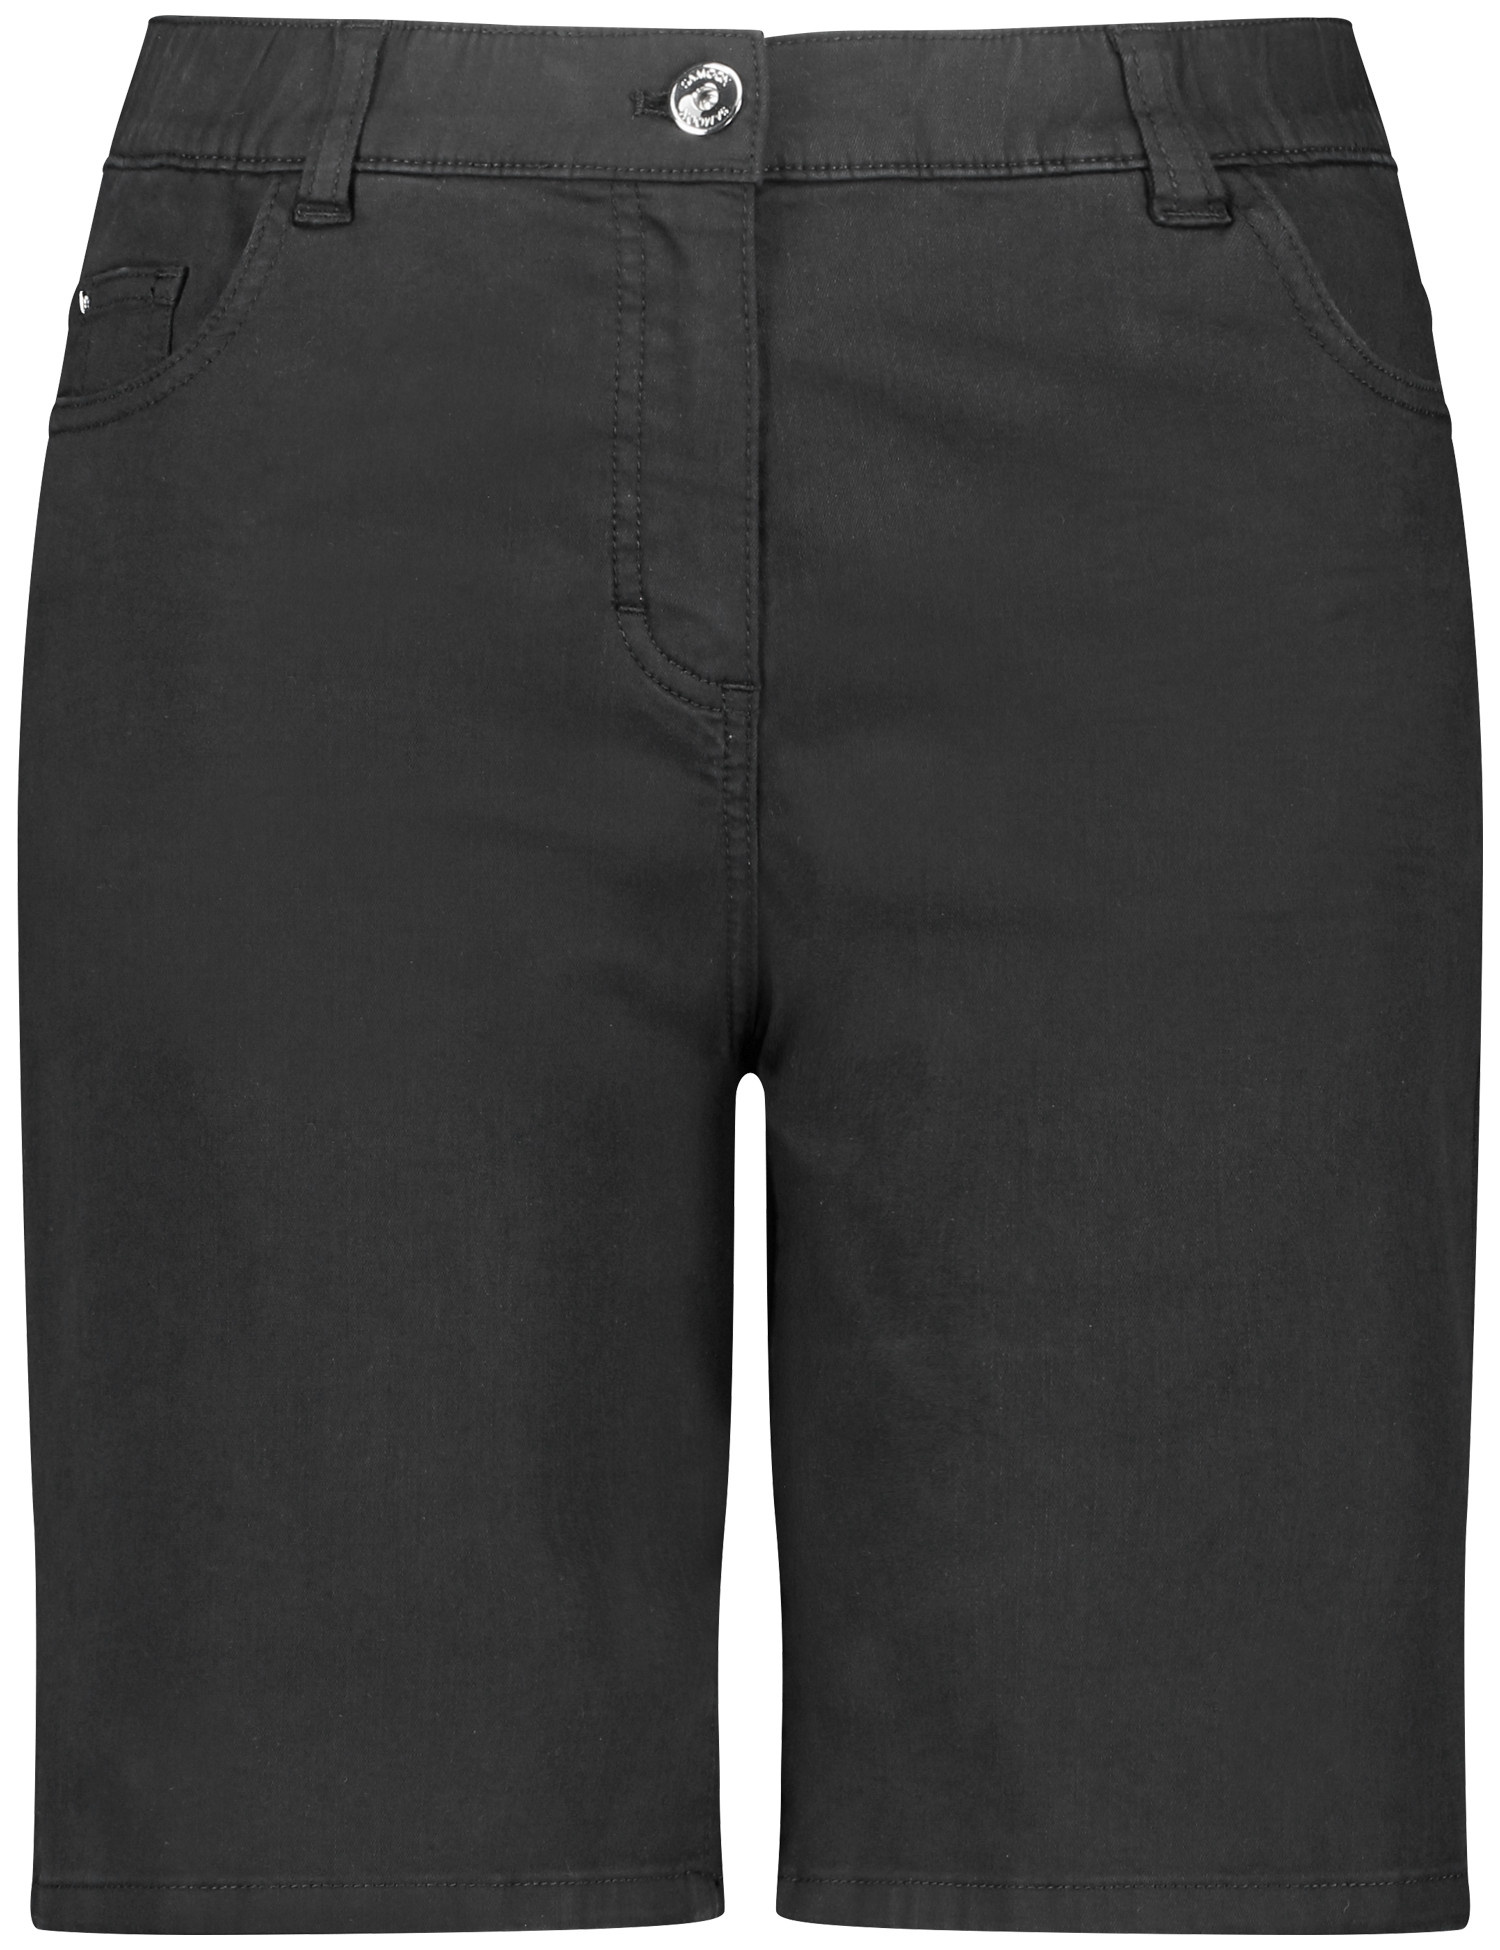 SAMOON Damen Shorts aus Baumwoll-Stretch Baumwolle Schwarz, 52 von SAMOON